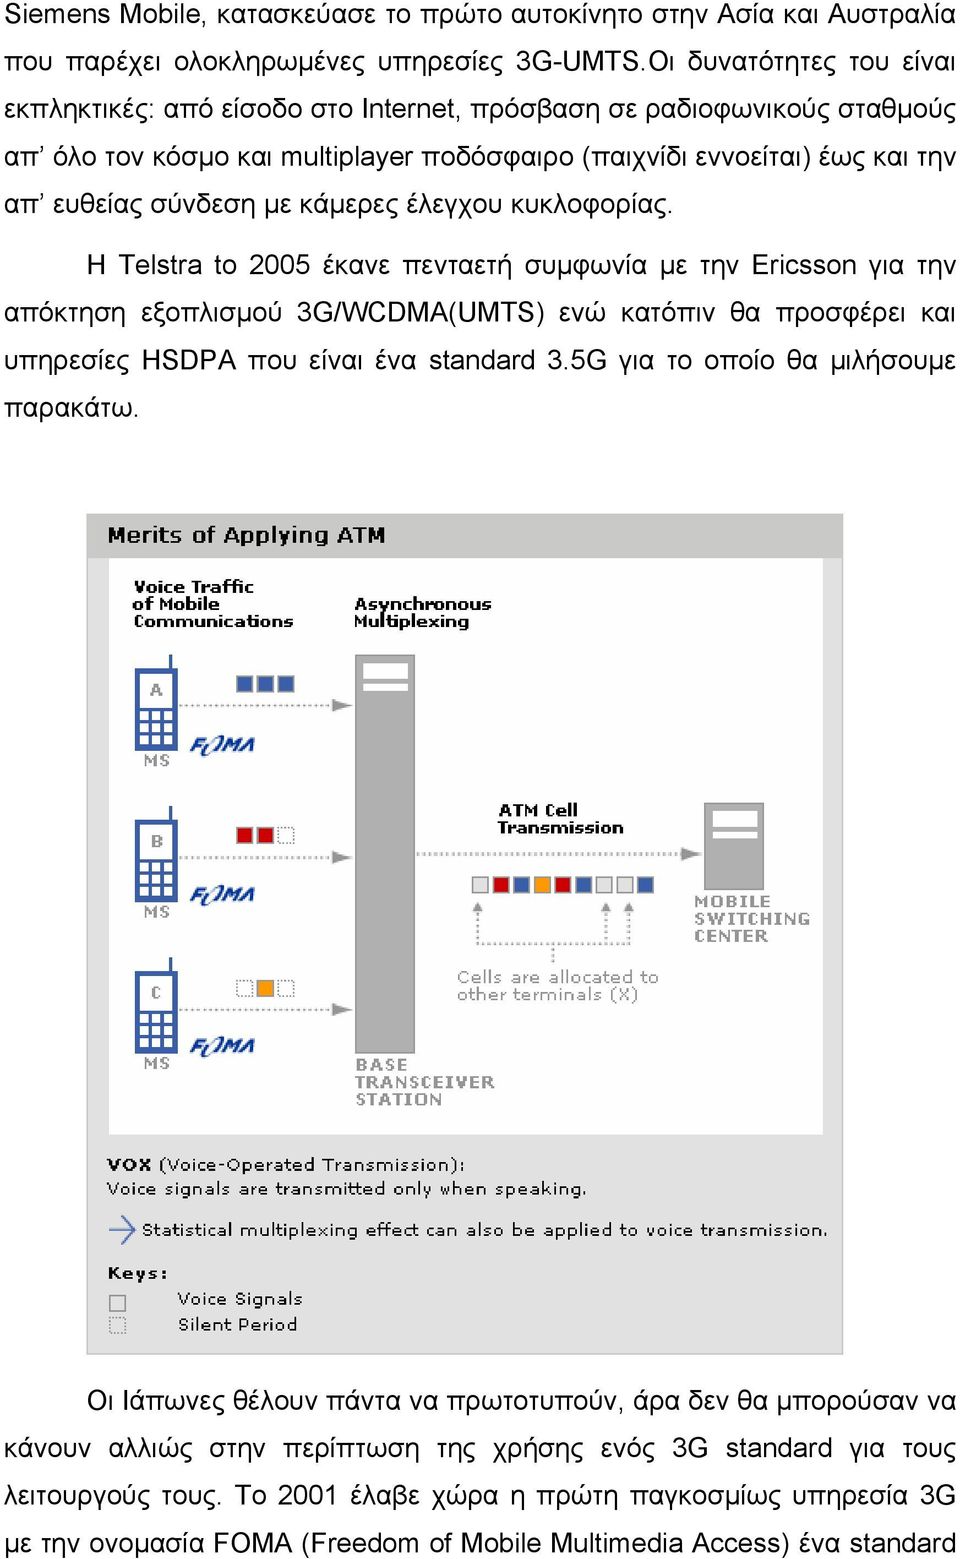 κάμερες έλεγχου κυκλοφορίας. Η Telstra to 2005 έκανε πενταετή συμφωνία με την Ericsson για την απόκτηση εξοπλισμού 3G/WCDMA(UMTS) ενώ κατόπιν θα προσφέρει και υπηρεσίες HSDPA που είναι ένα standard 3.